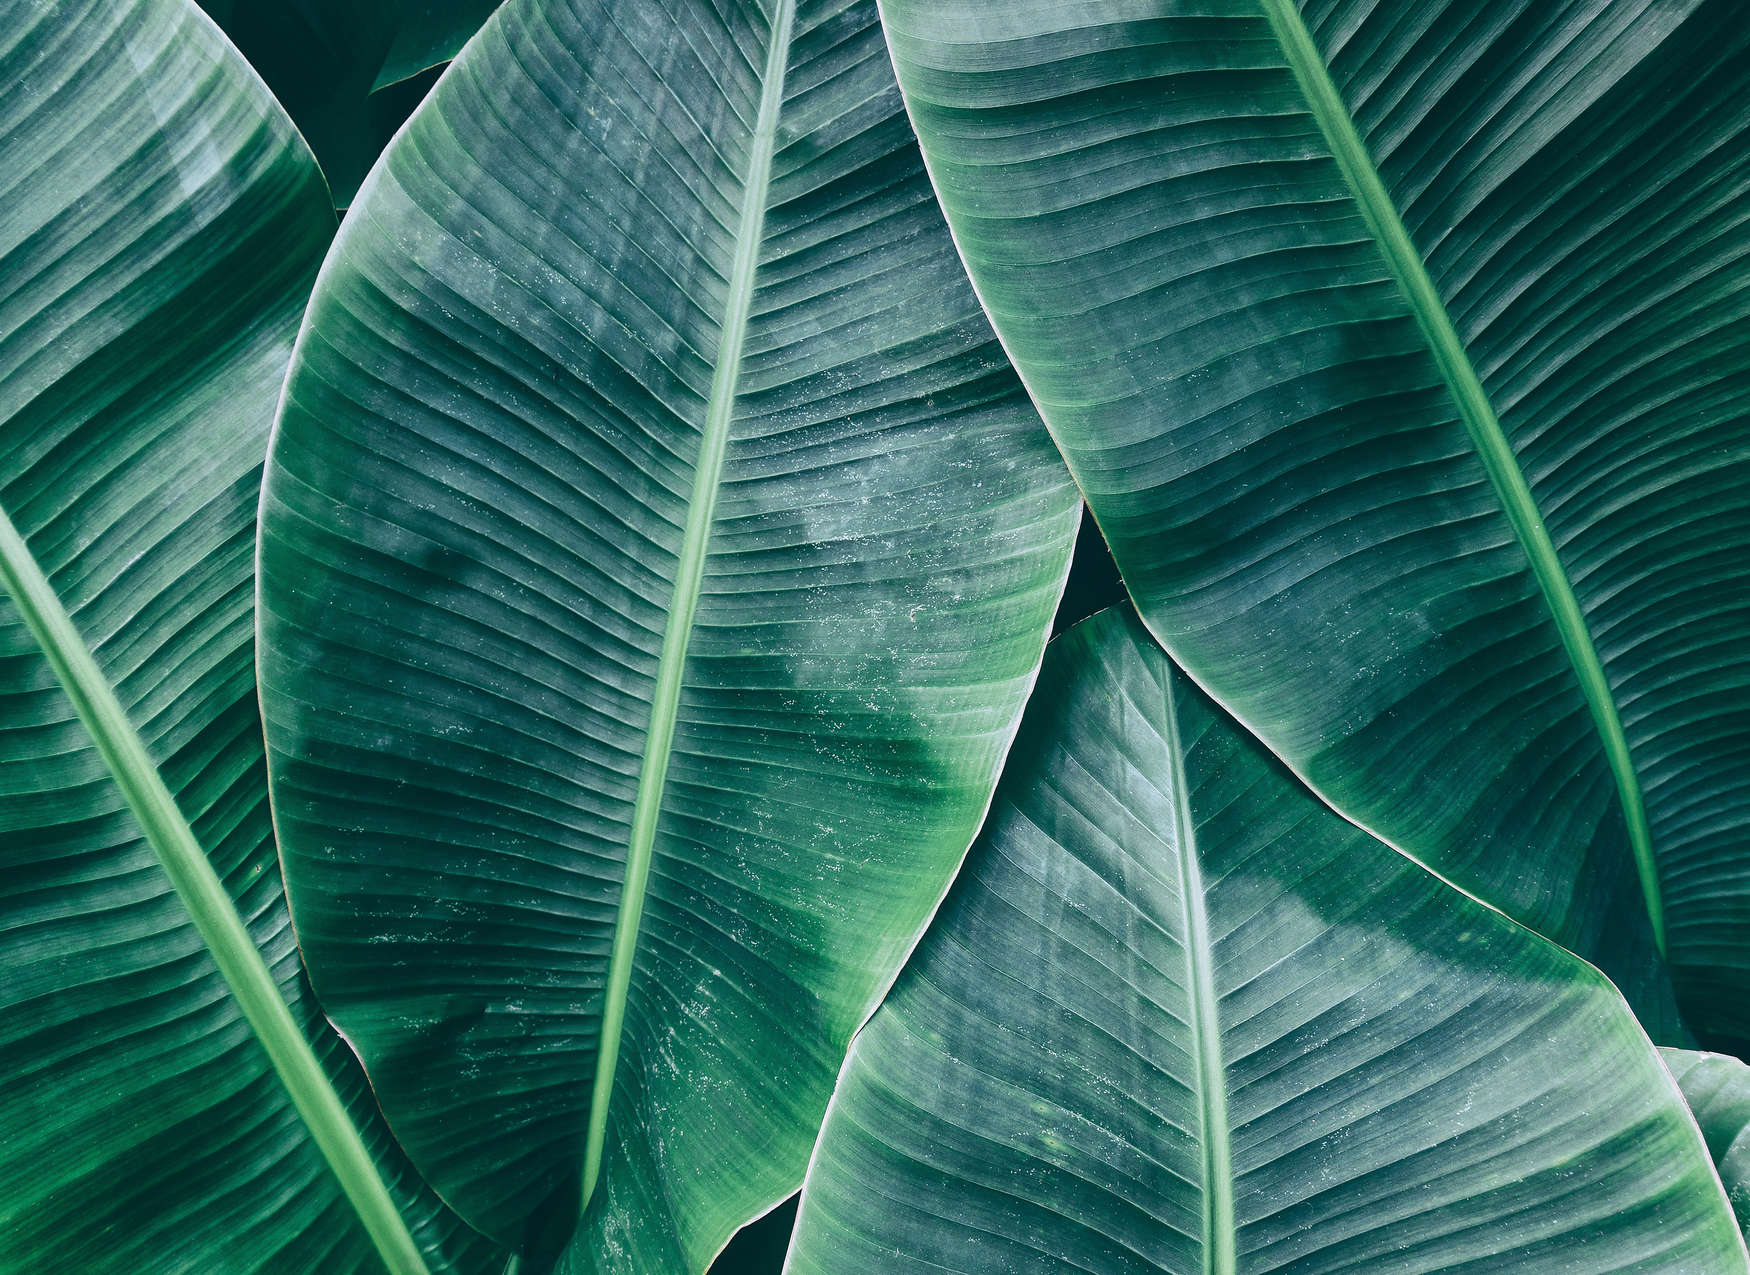             Papel pintado "Jungle Feeling" con hojas de plátano - Verde
        